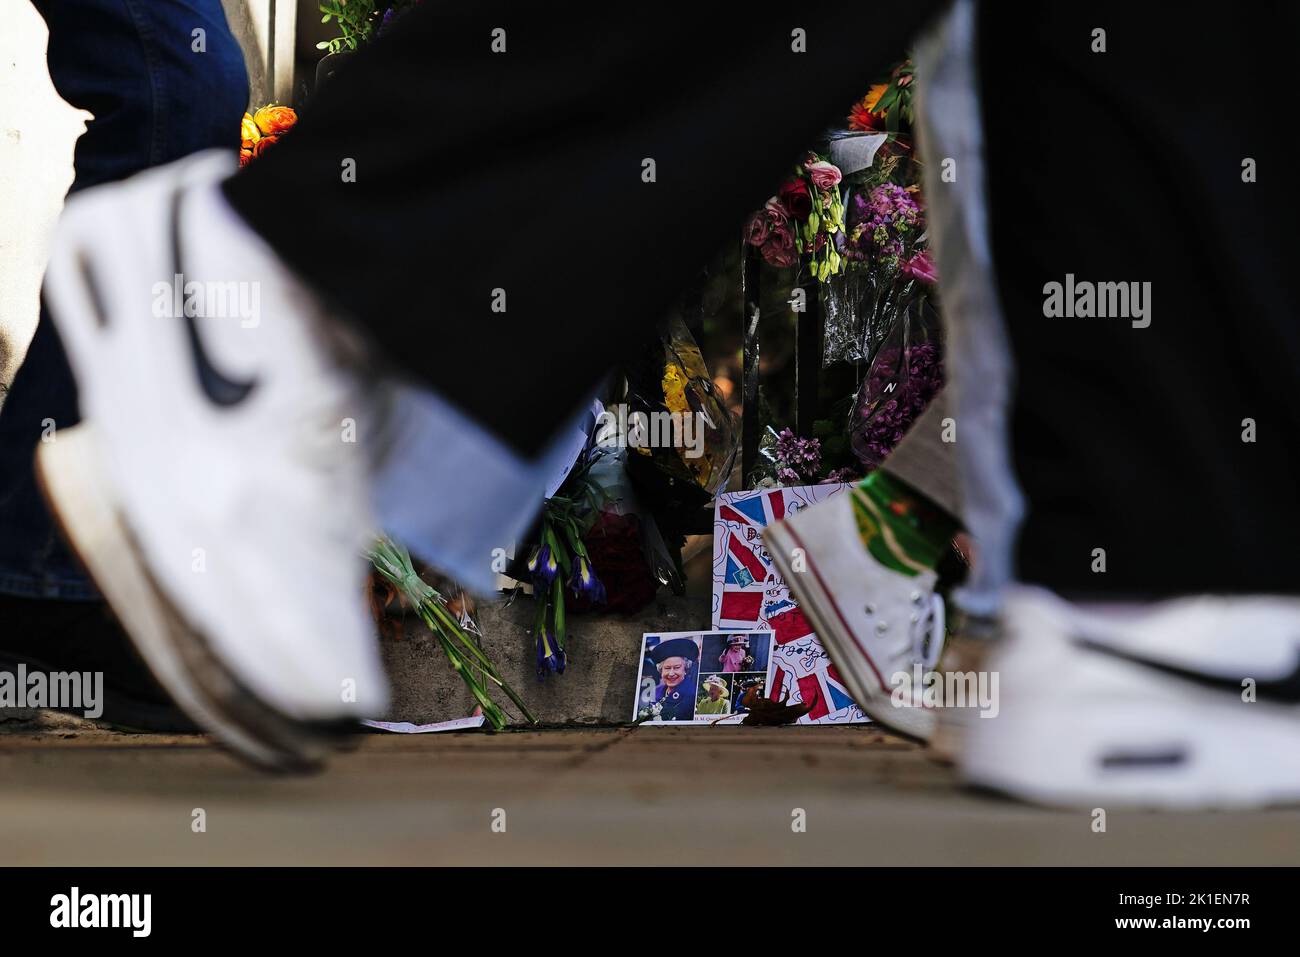 Miembros del público caminan junto a fotos de la reina Isabel II cerca del Palacio de Buckingham en Londres, tras la muerte de la reina Isabel II Fecha de la foto: Domingo 18 de septiembre de 2022. Foto de stock